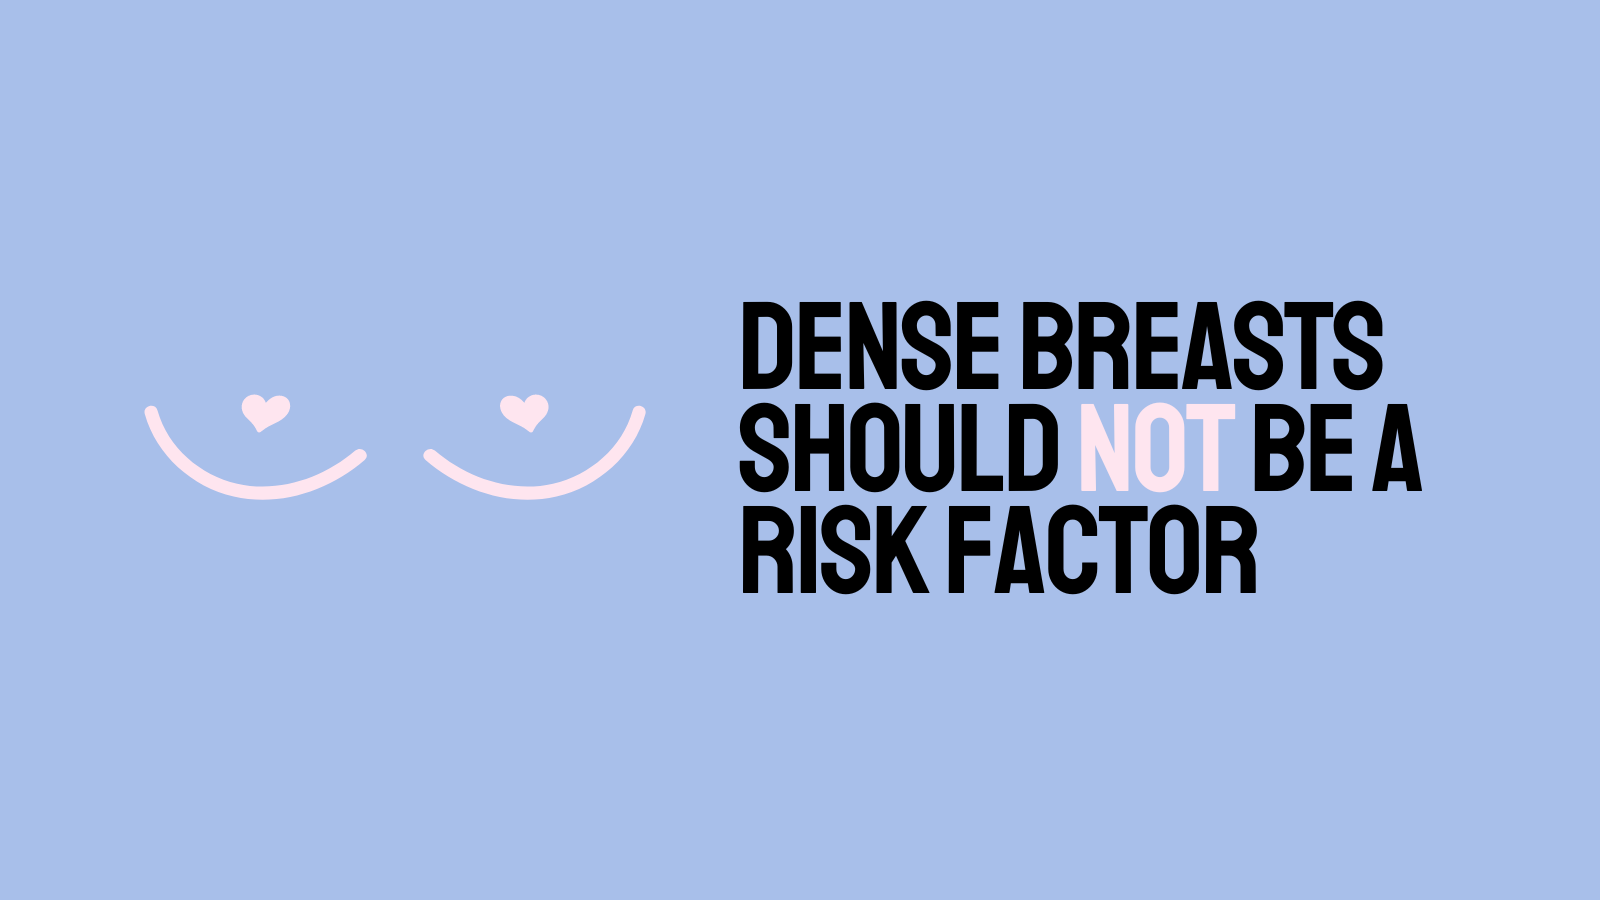 Les seins denses ne devraient pas être un facteur de risque